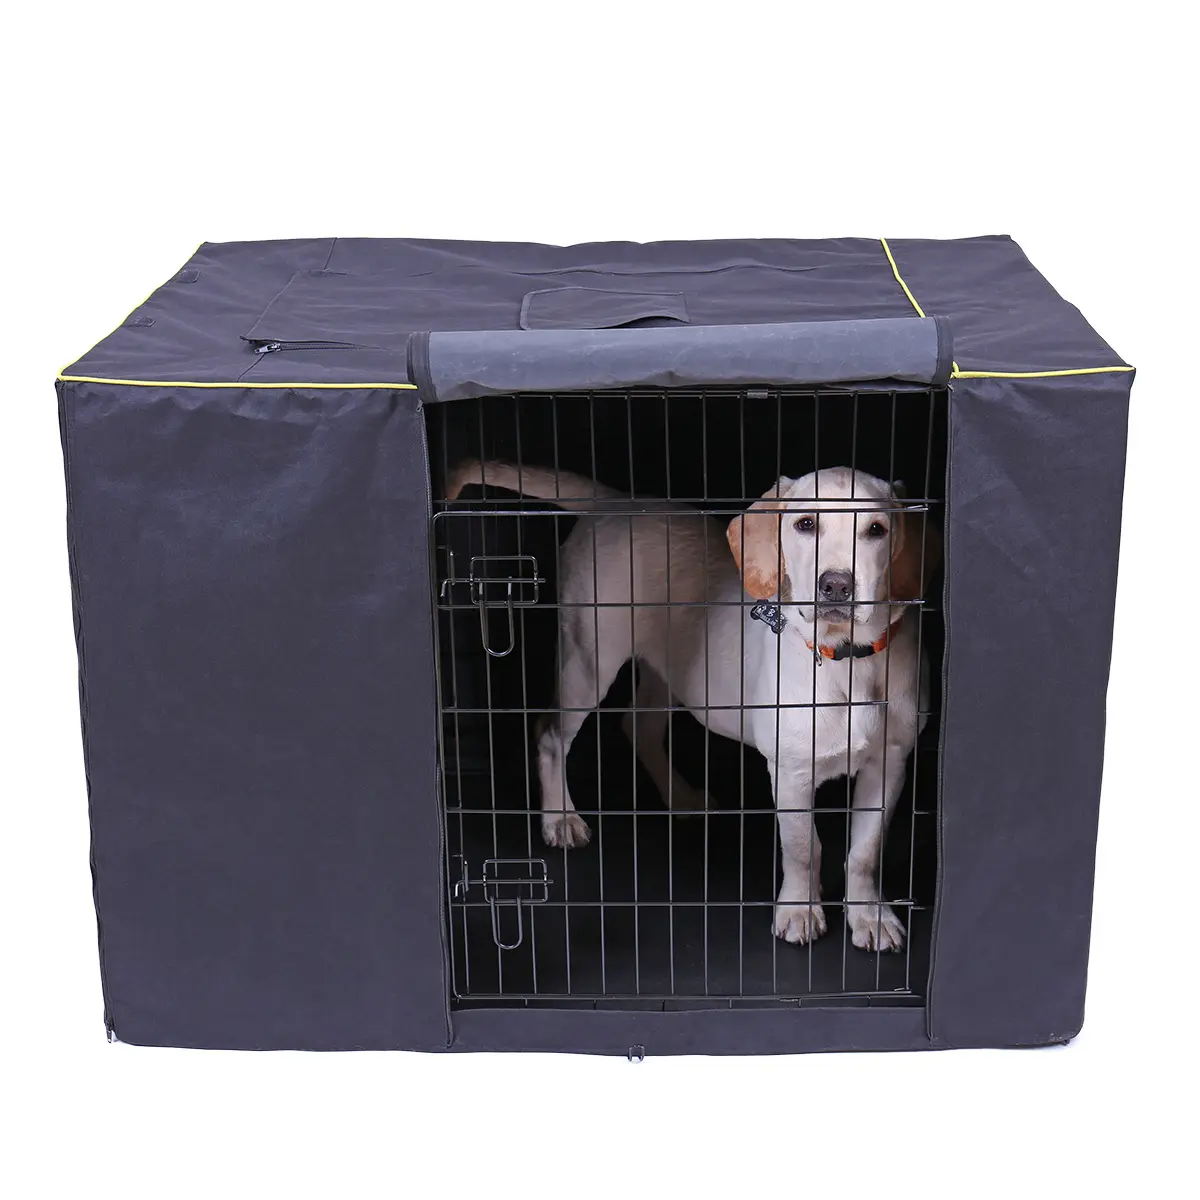 Hohe Qualität Wasserdicht Pet Hund Käfig Abdeckung Nicht-Slip Zwinger Käfig Abdeckung Hund Kiste Abdeckung Im Freien